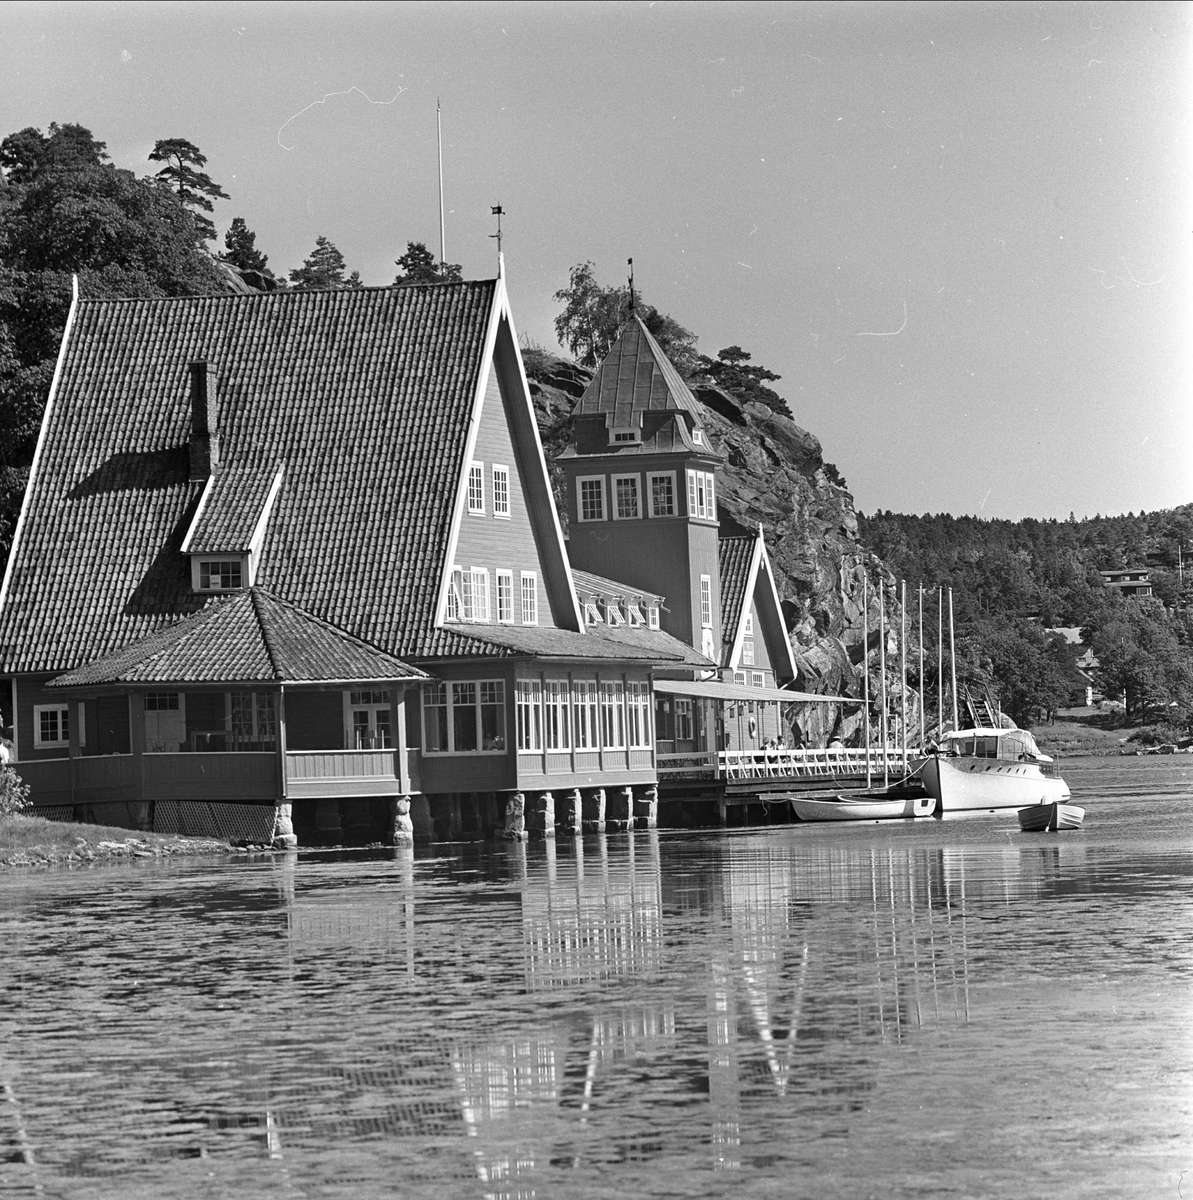 Stemning før regatta på Hankø, Fredrikstad, Østfold, juni 1964.  Seilerkroen og Hankø Yachtklubb.